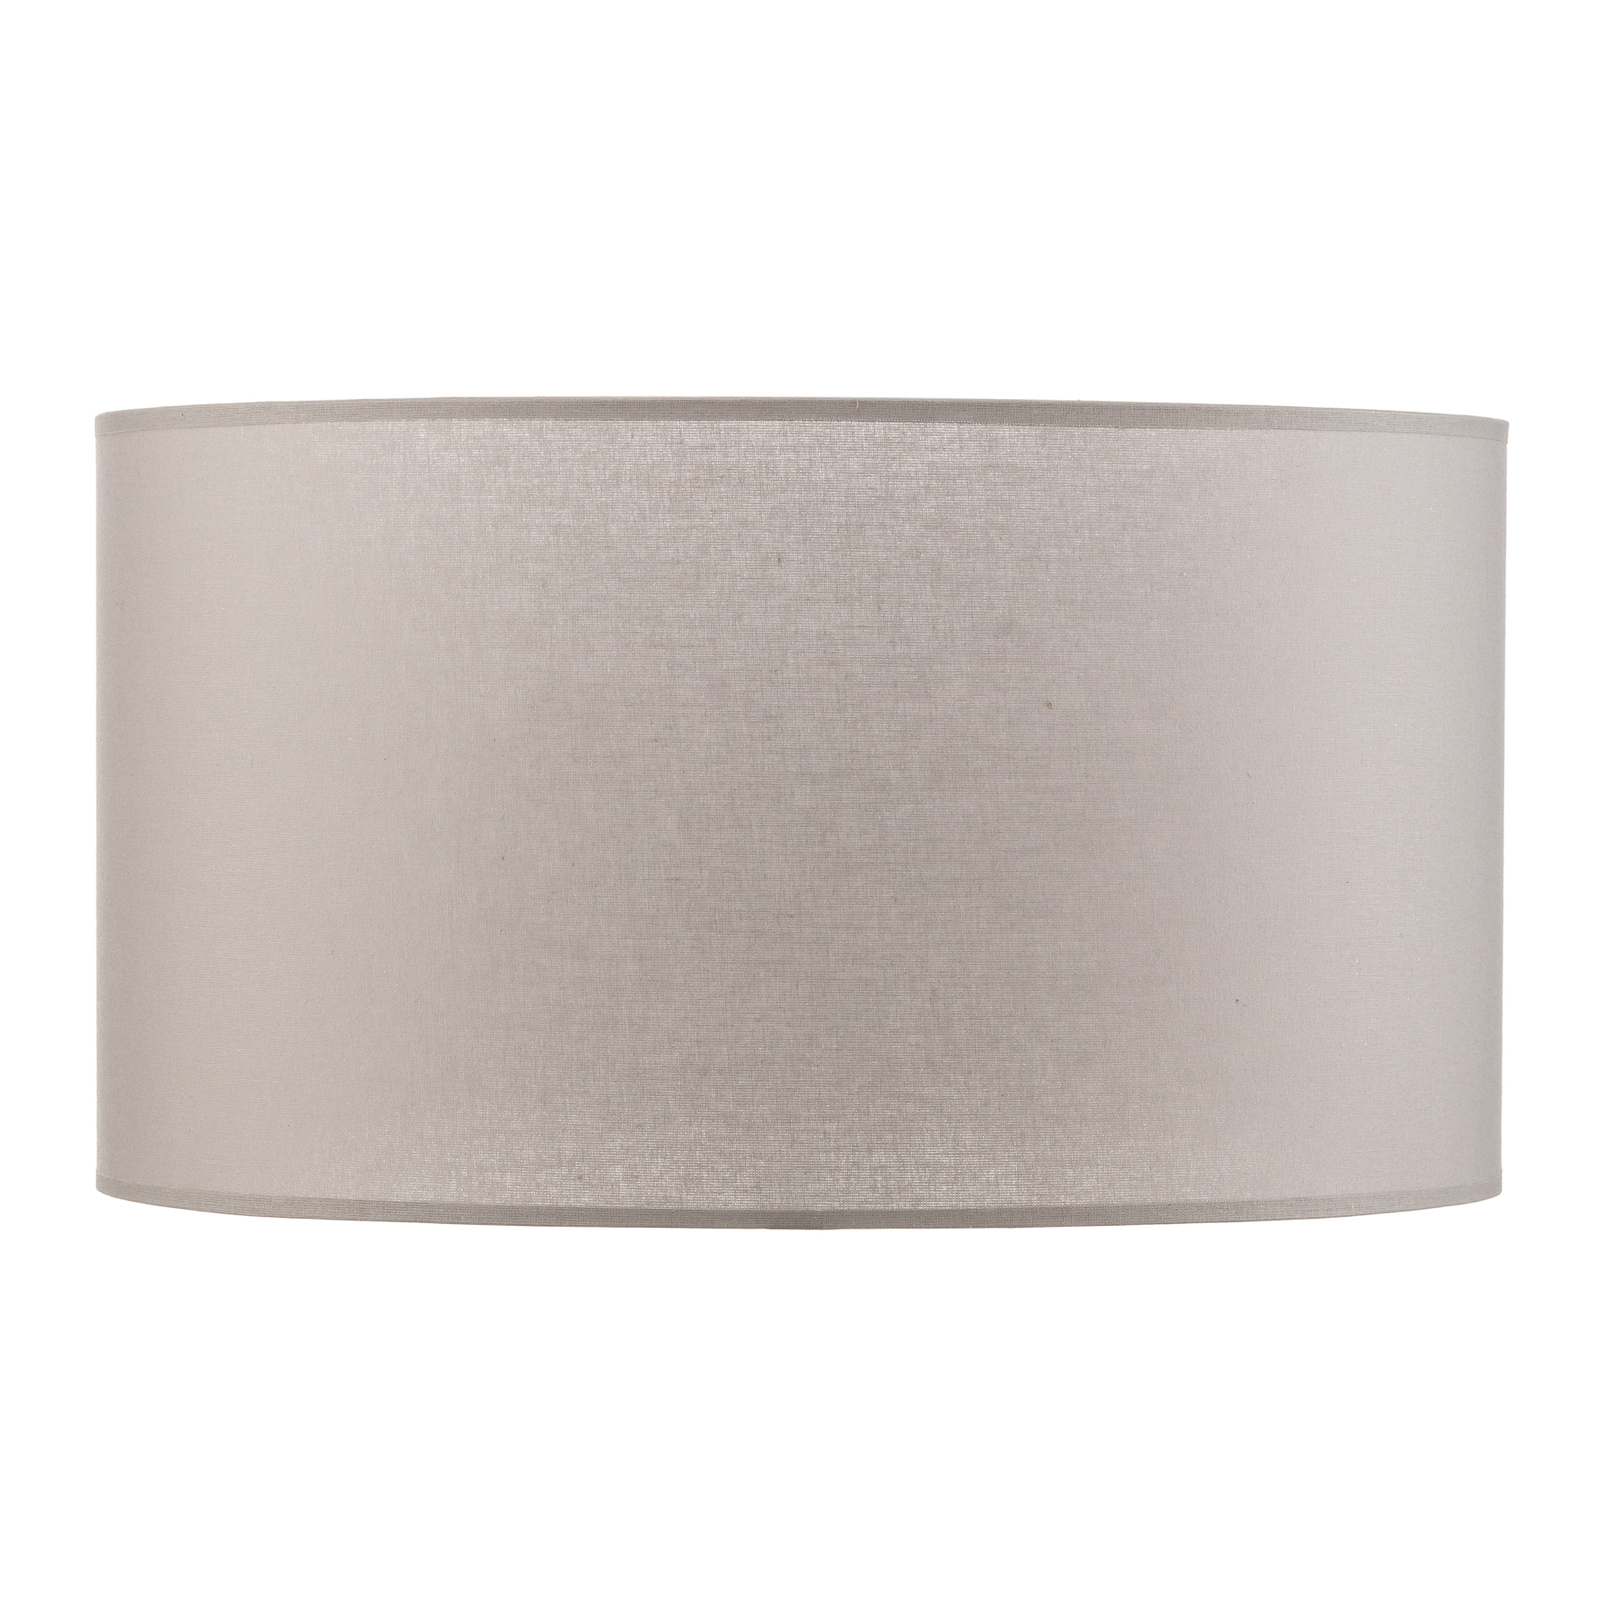 Lampeskjerm Roller Ø 40 cm, grå